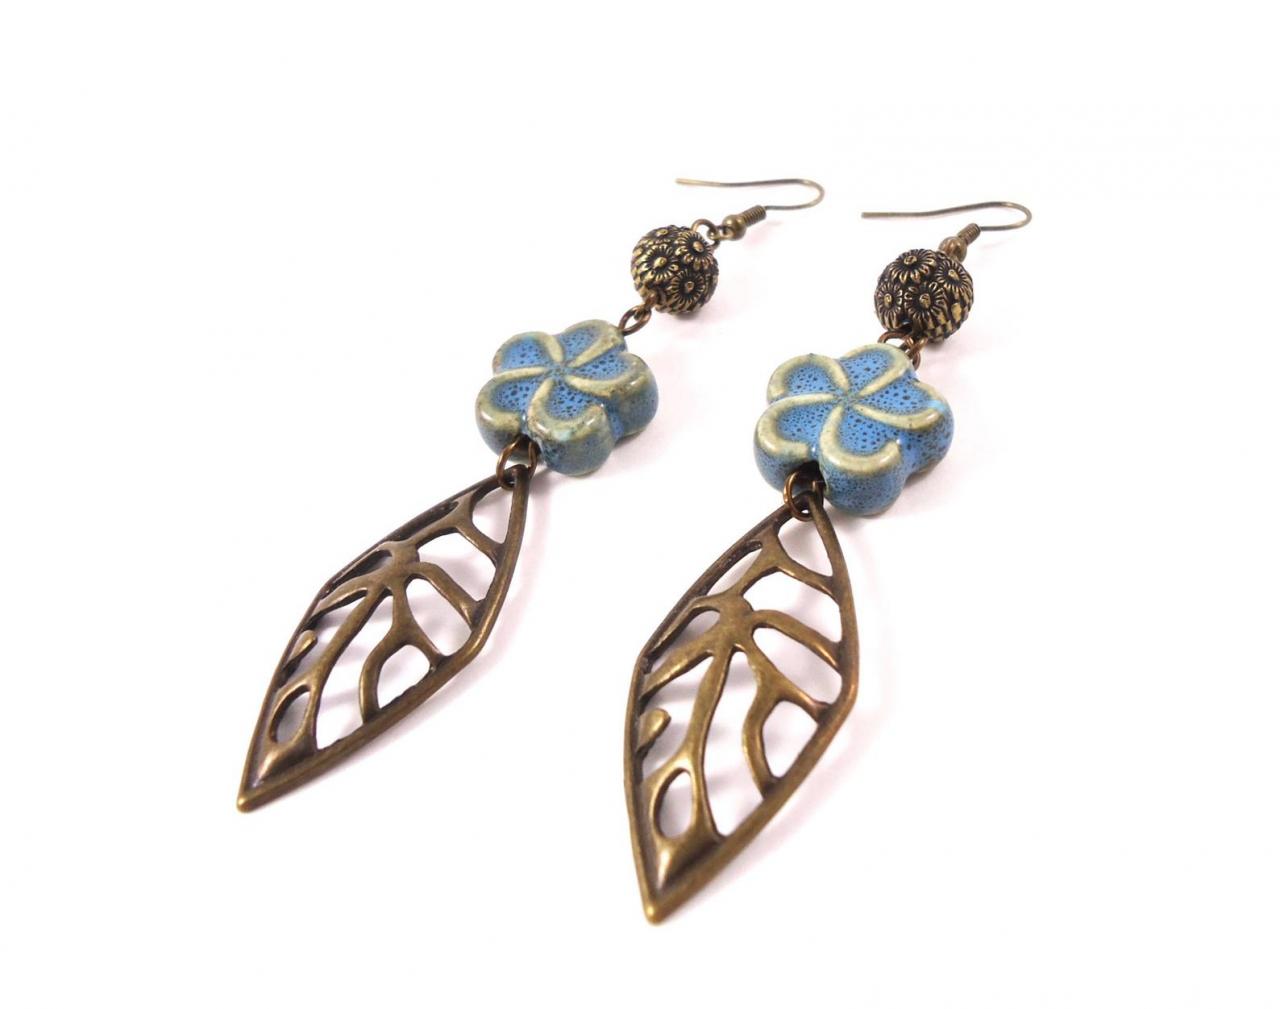 Flower Ethnic Earrings - Summer Boho Jewelry - Long Earrings Tribal - Blue Ethnic Earrings - Brass Ethnic Earrings - Long Ethnic Earrings